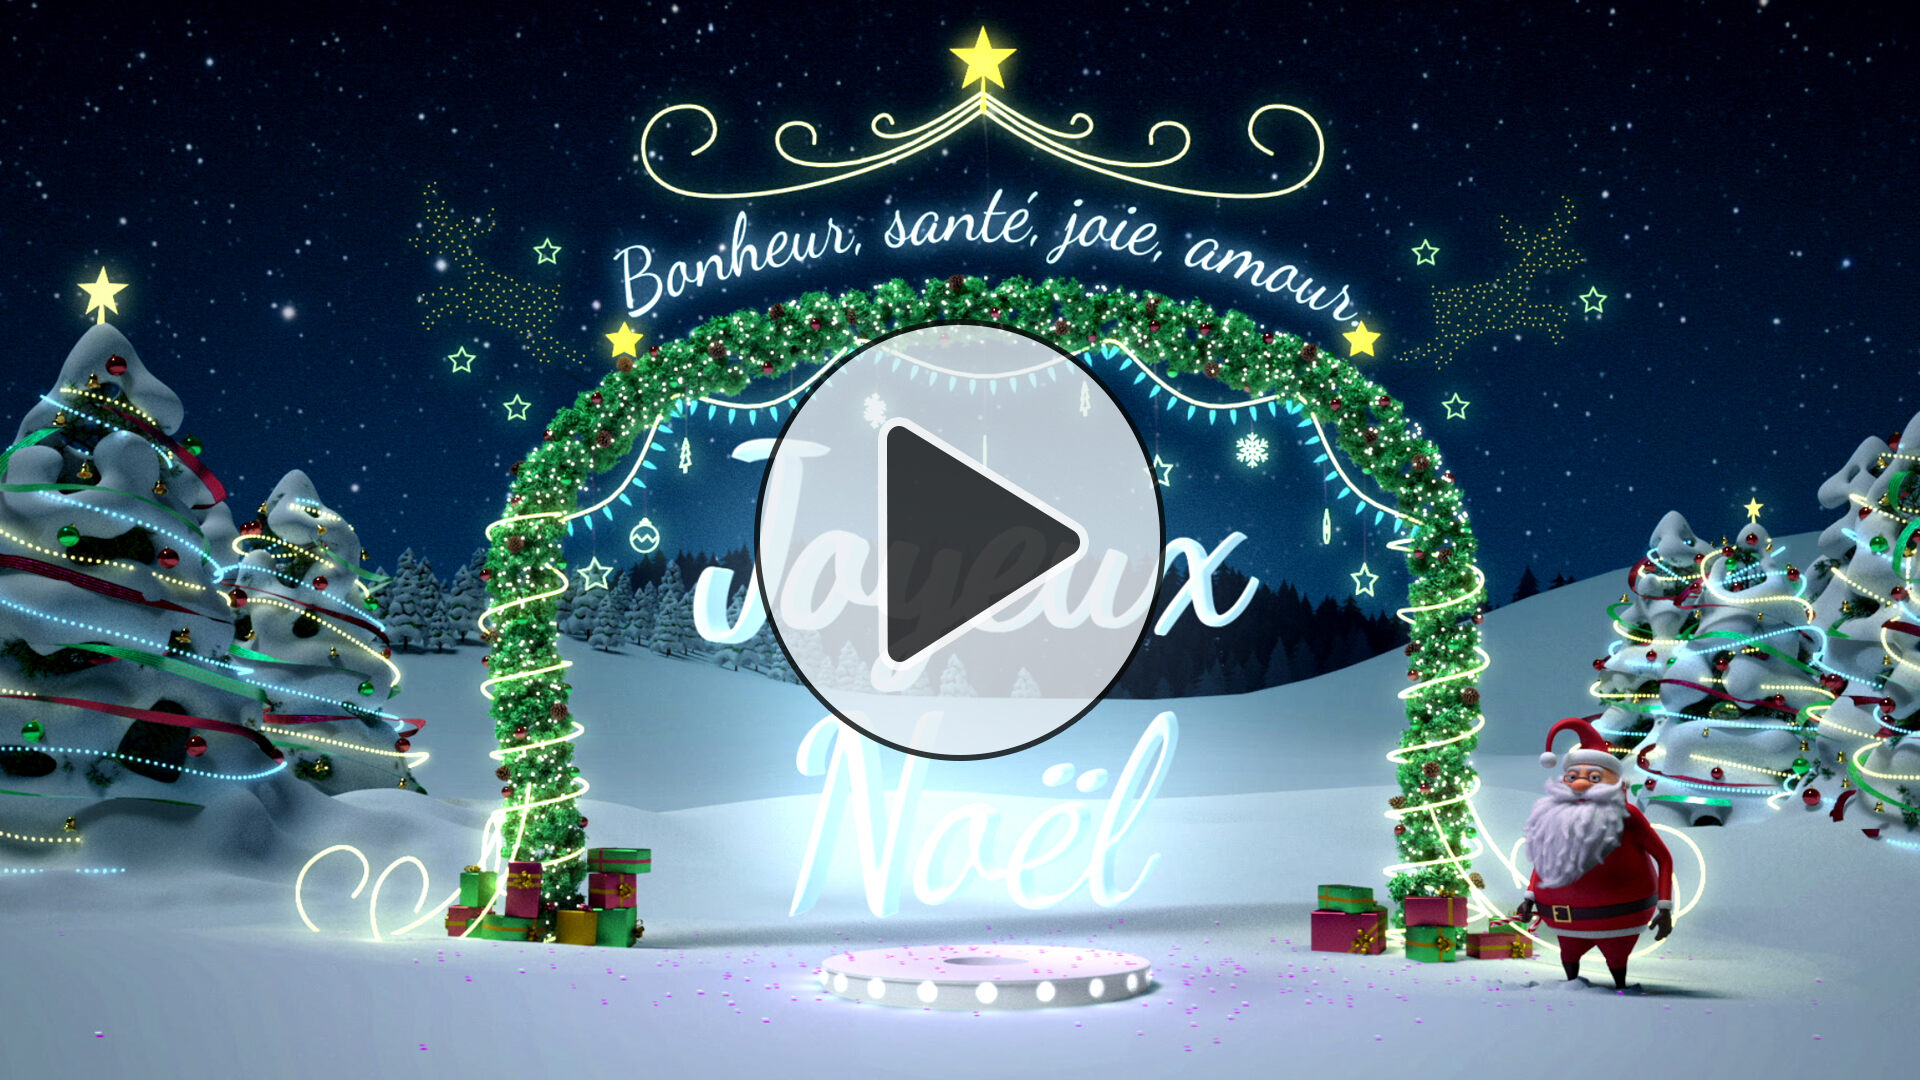 Plus Belles Cartes Virtuelles Animees Gratuites Noel avec Noël Images Gratuites 